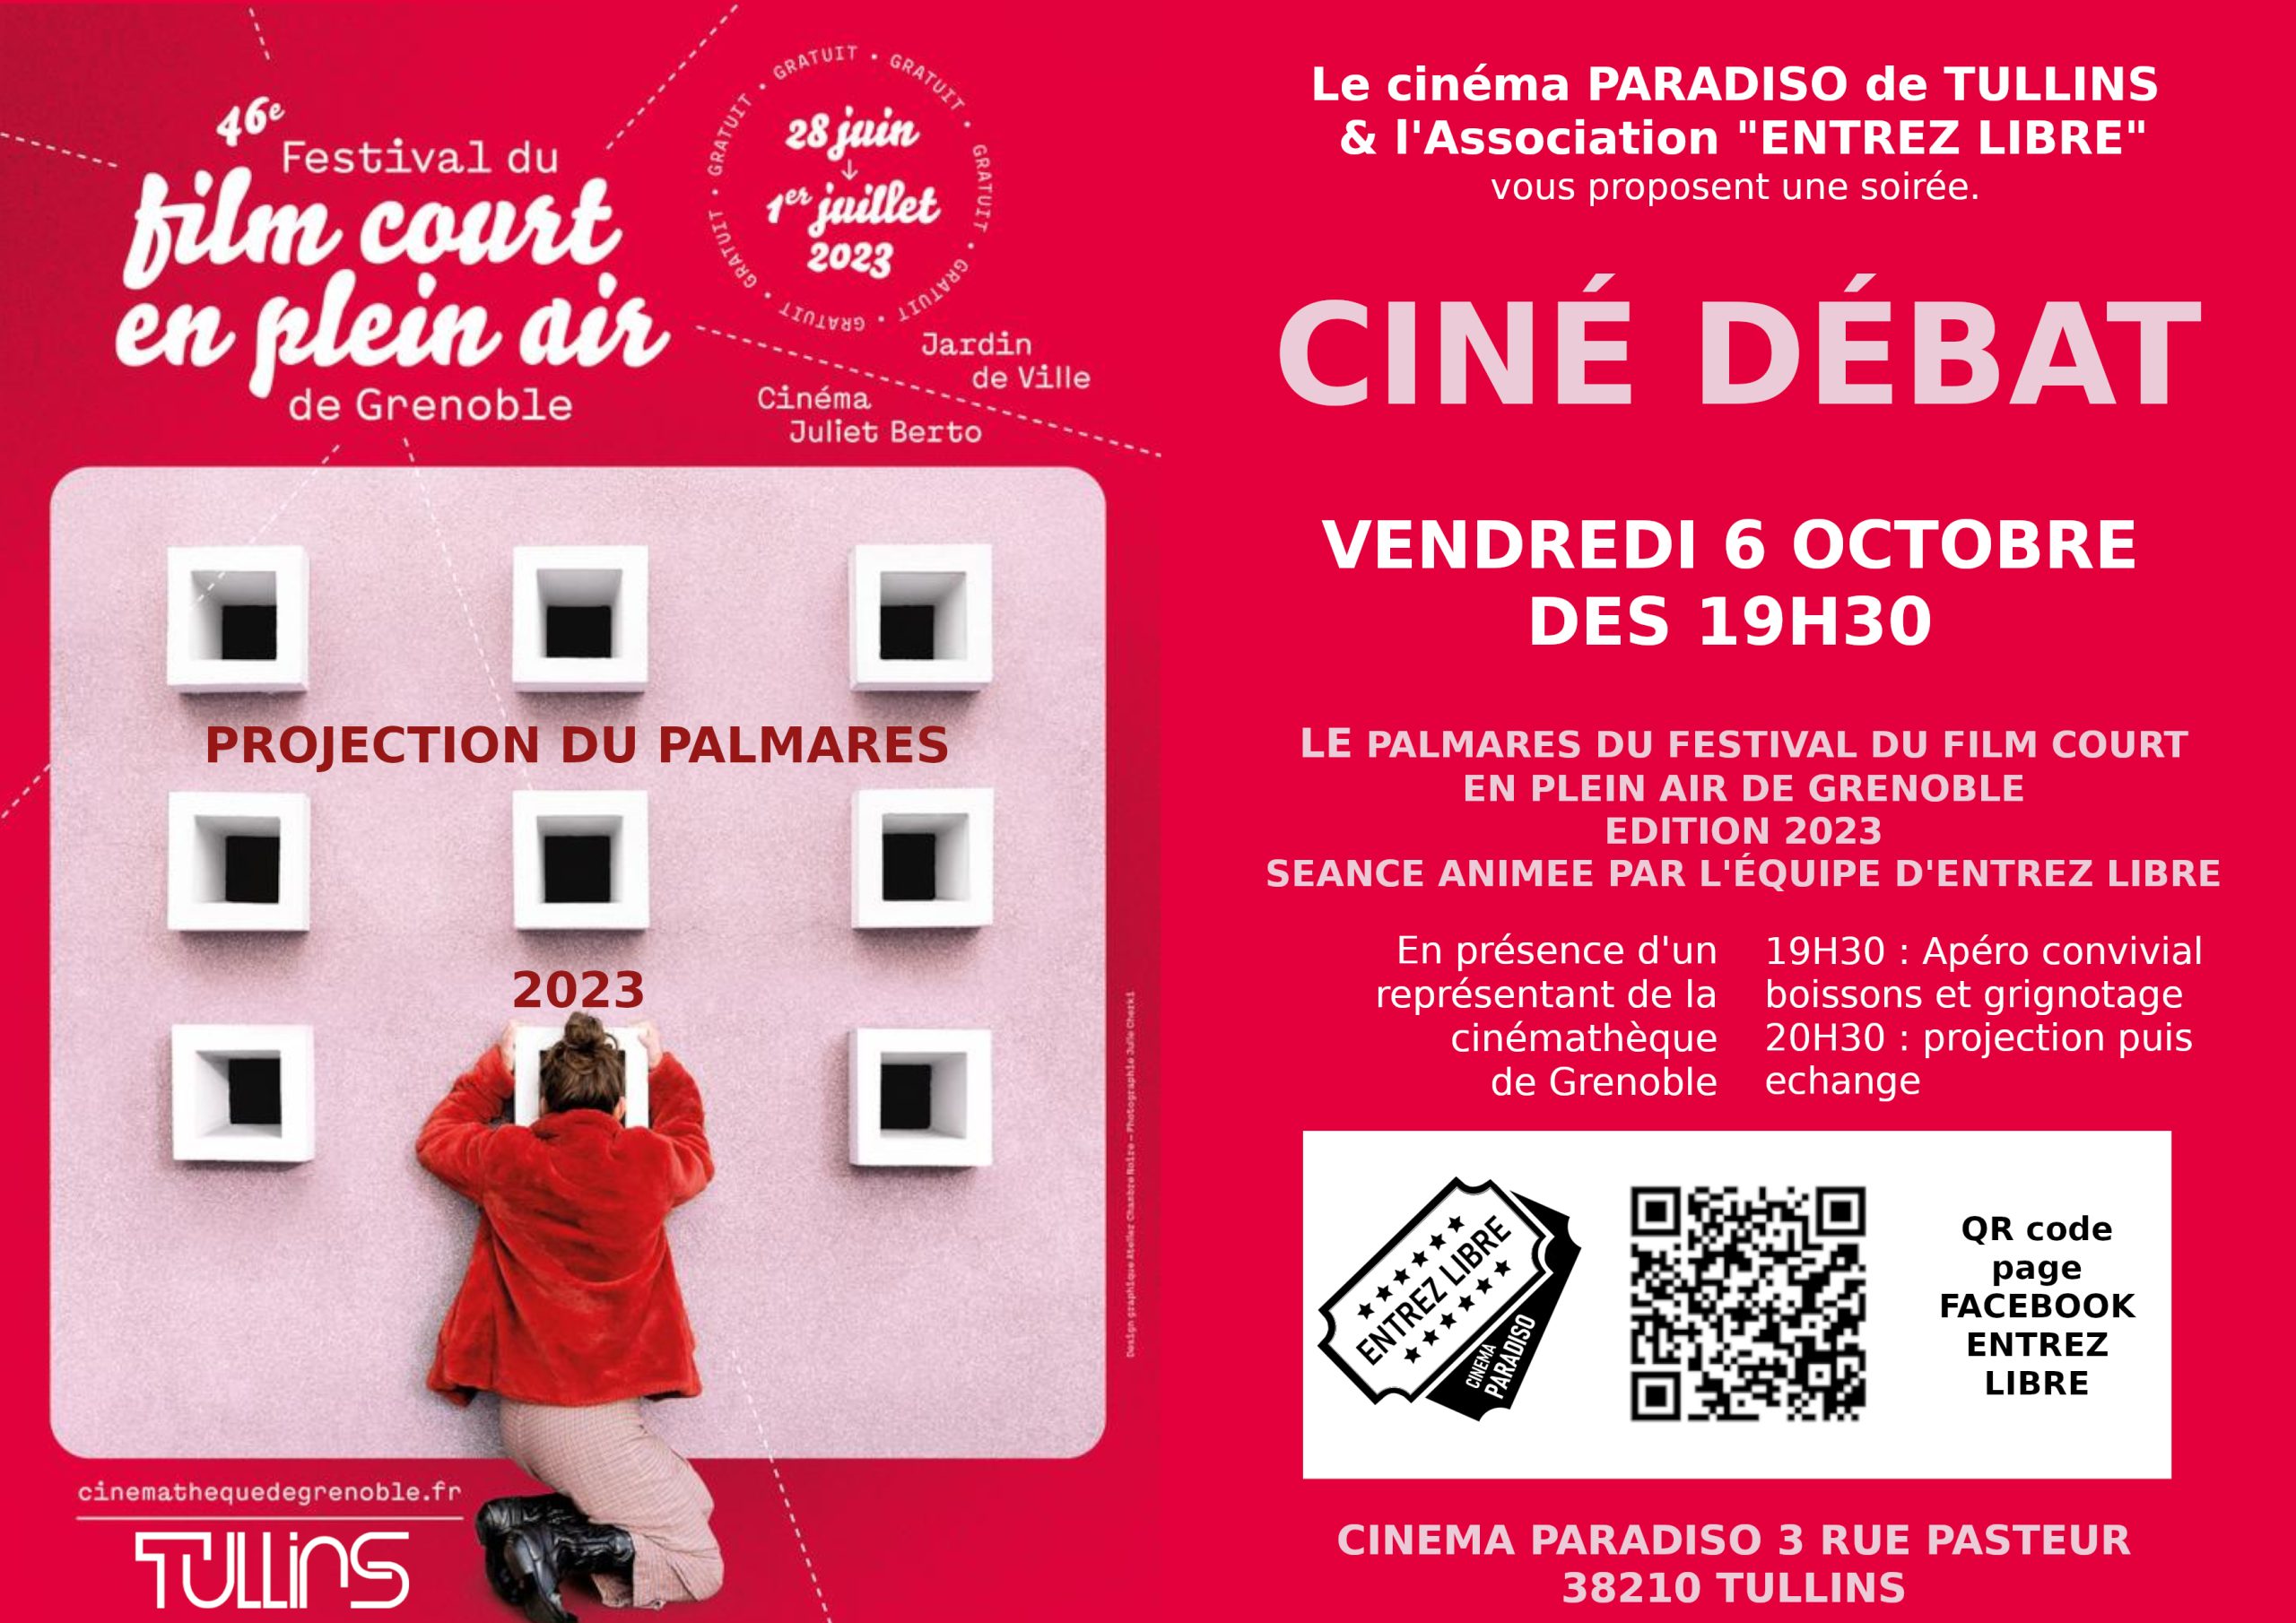 06/10/23 – Projection du Palmarès du 46ème Festival du film court en plein air